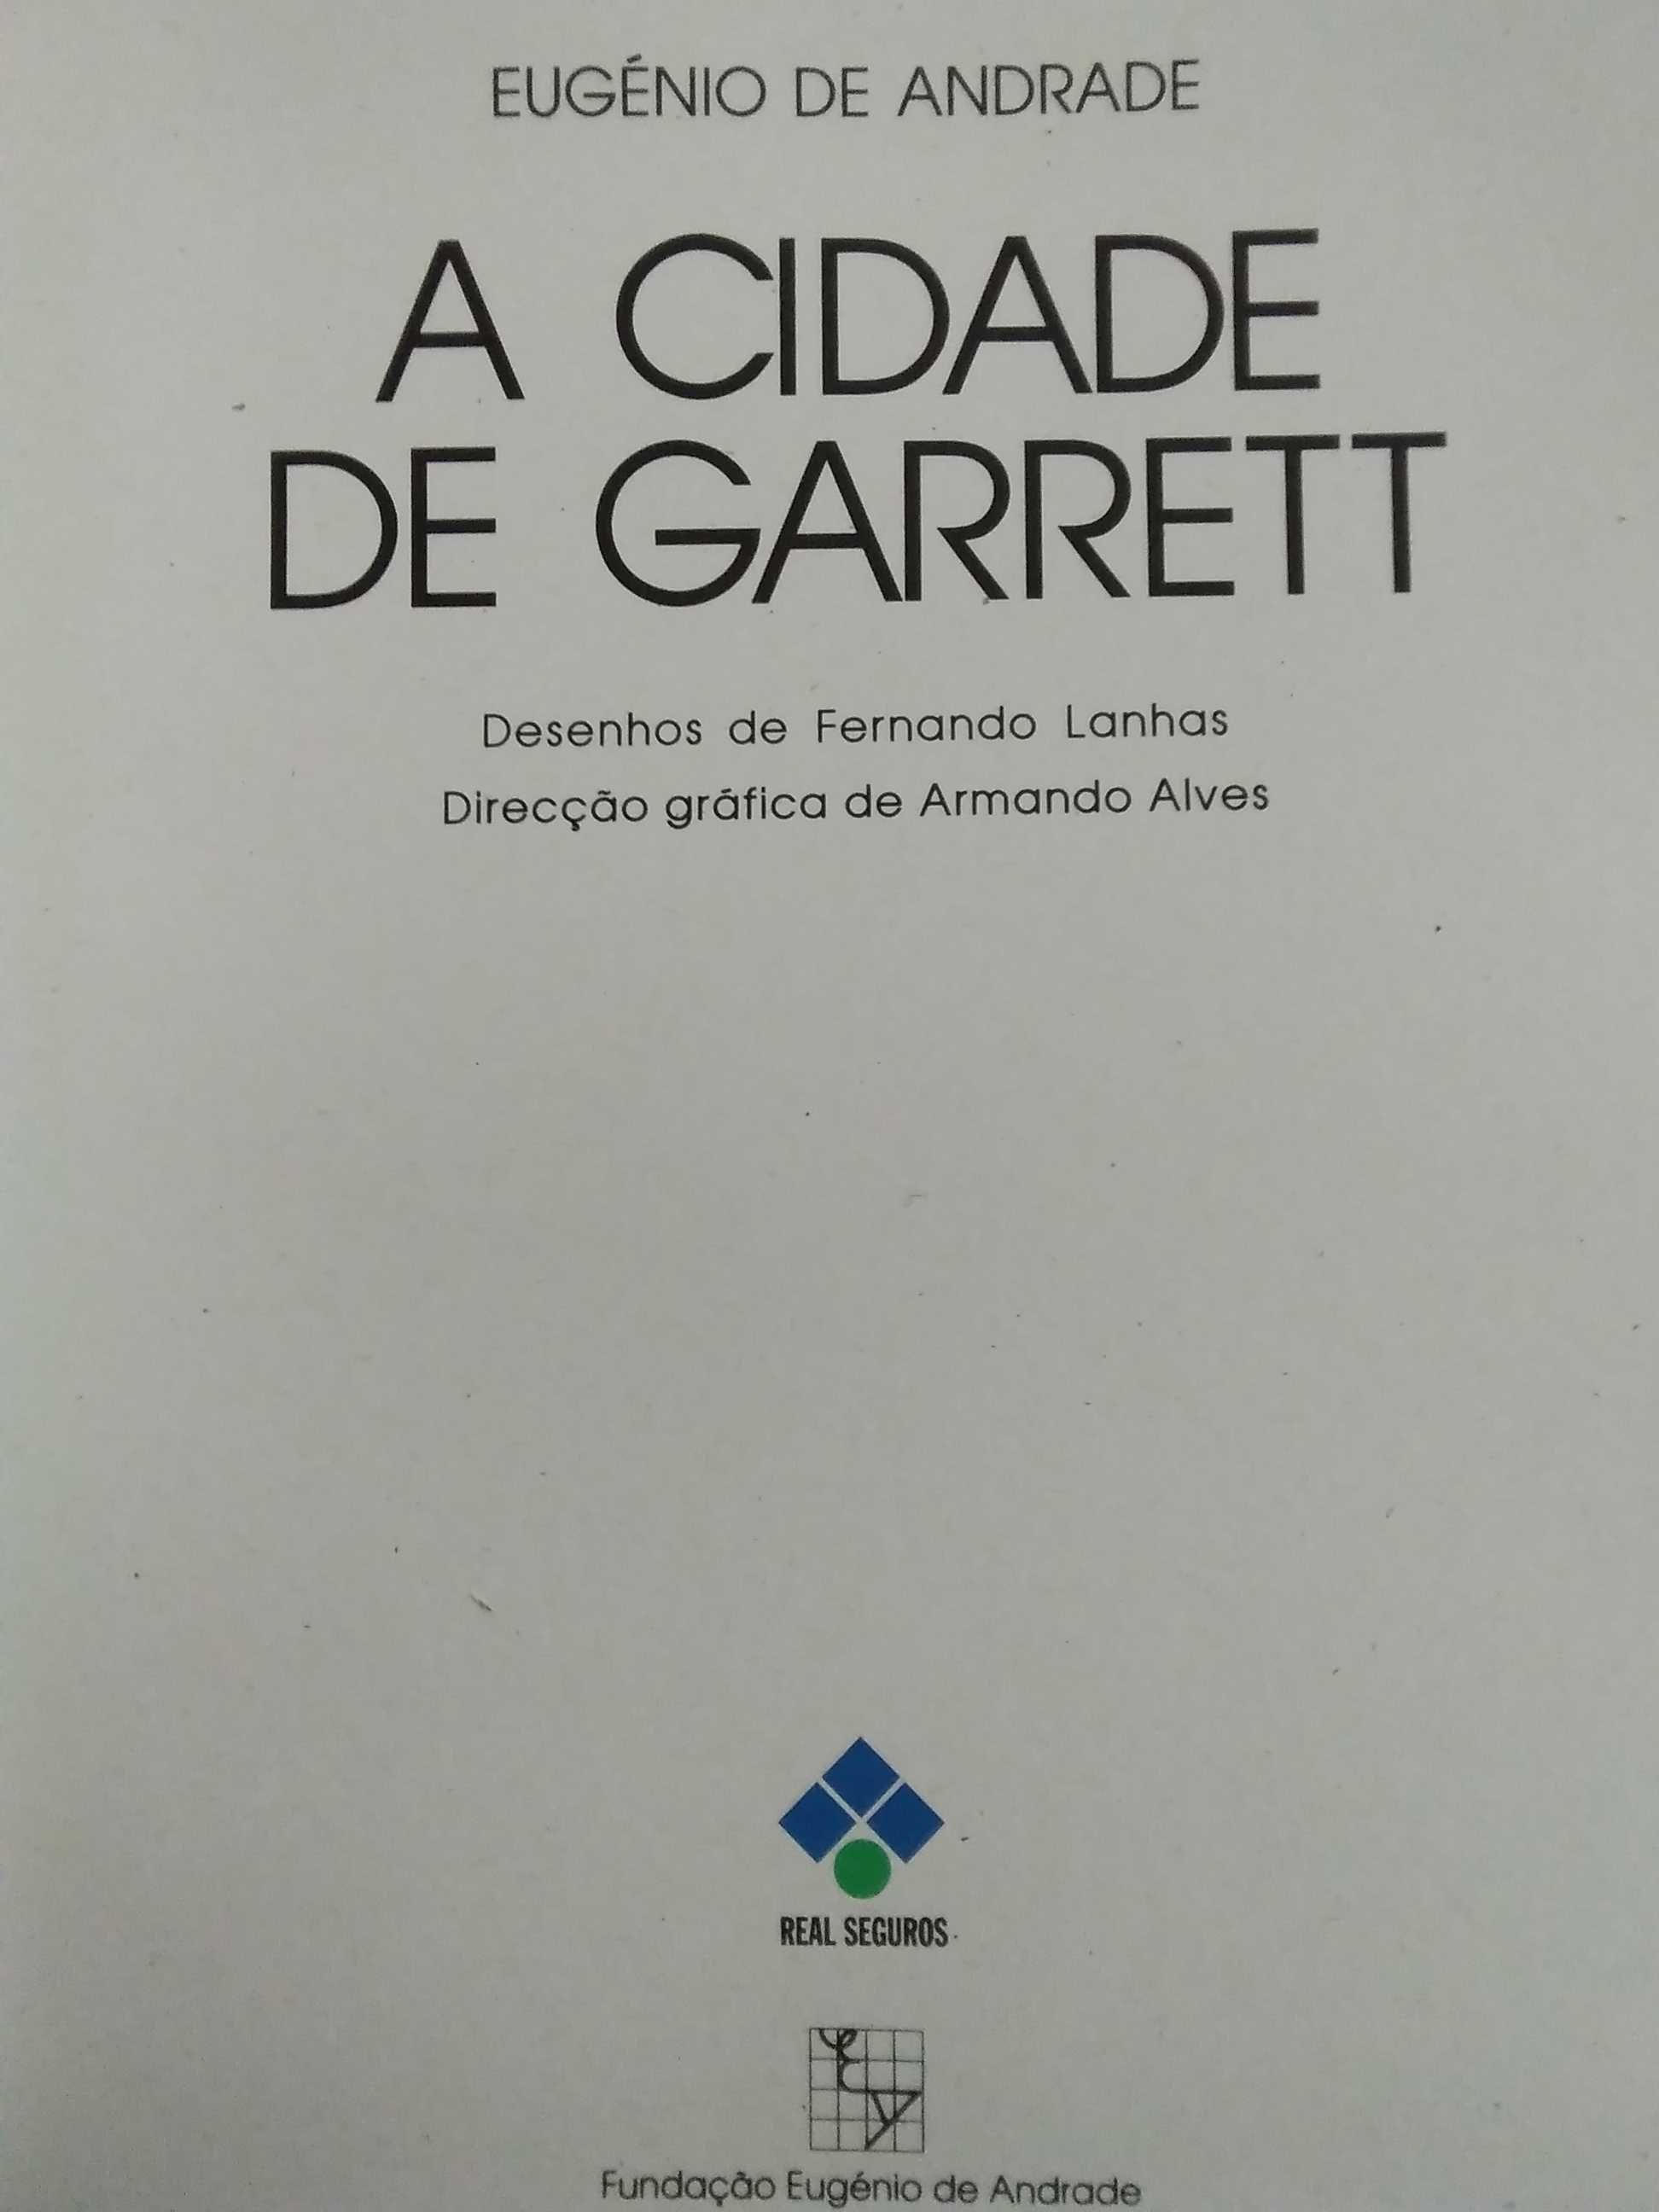 Eugènio de Andrade - A Cidade de Garrett